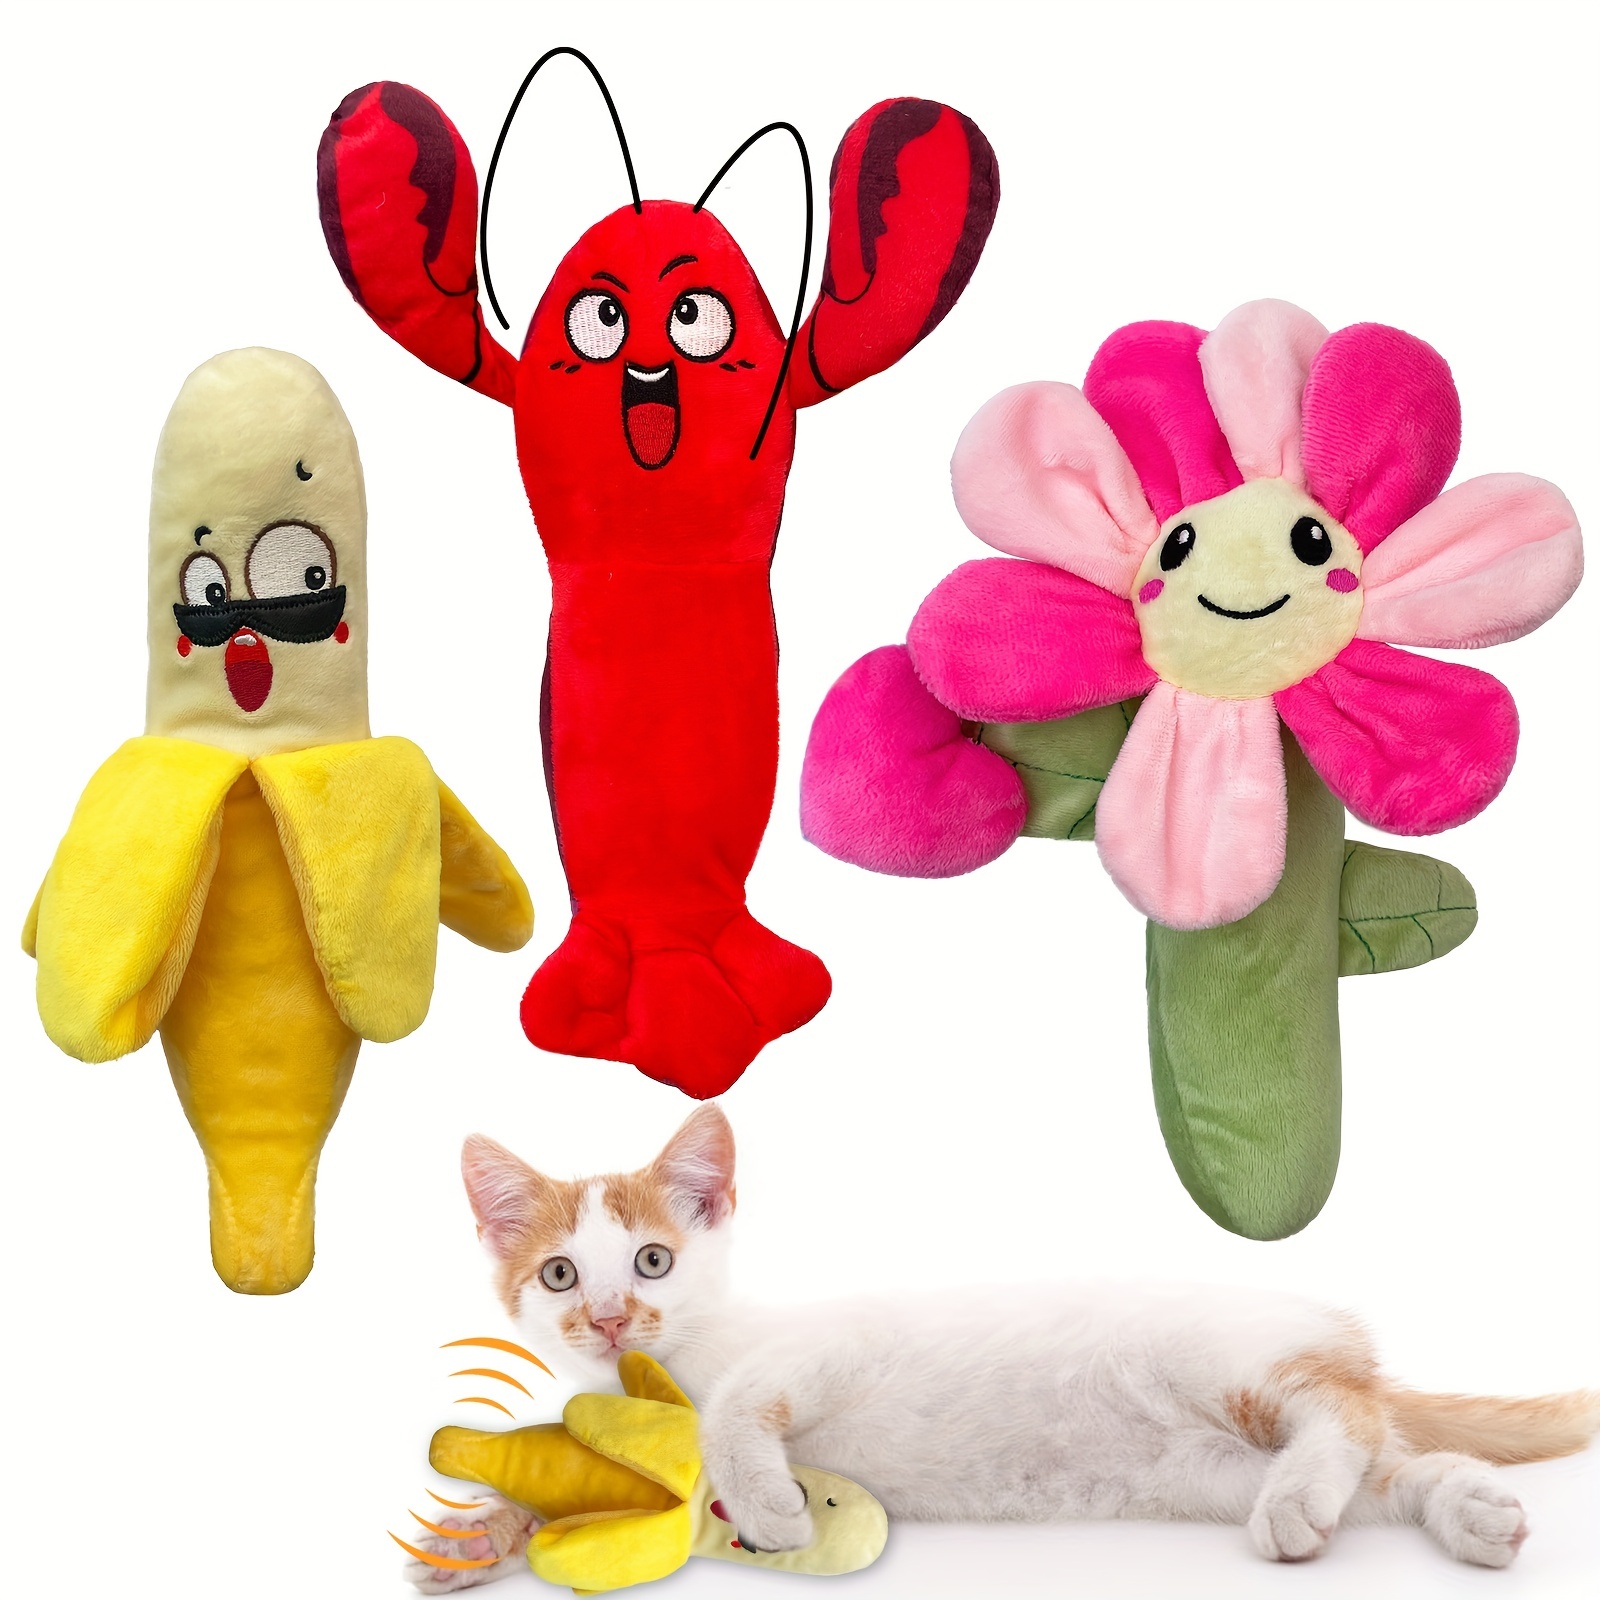 Juguetes de peluche para perros, juguetes interactivos para gritar,  juguetes de peluche para mascotas para aliviar el estrés